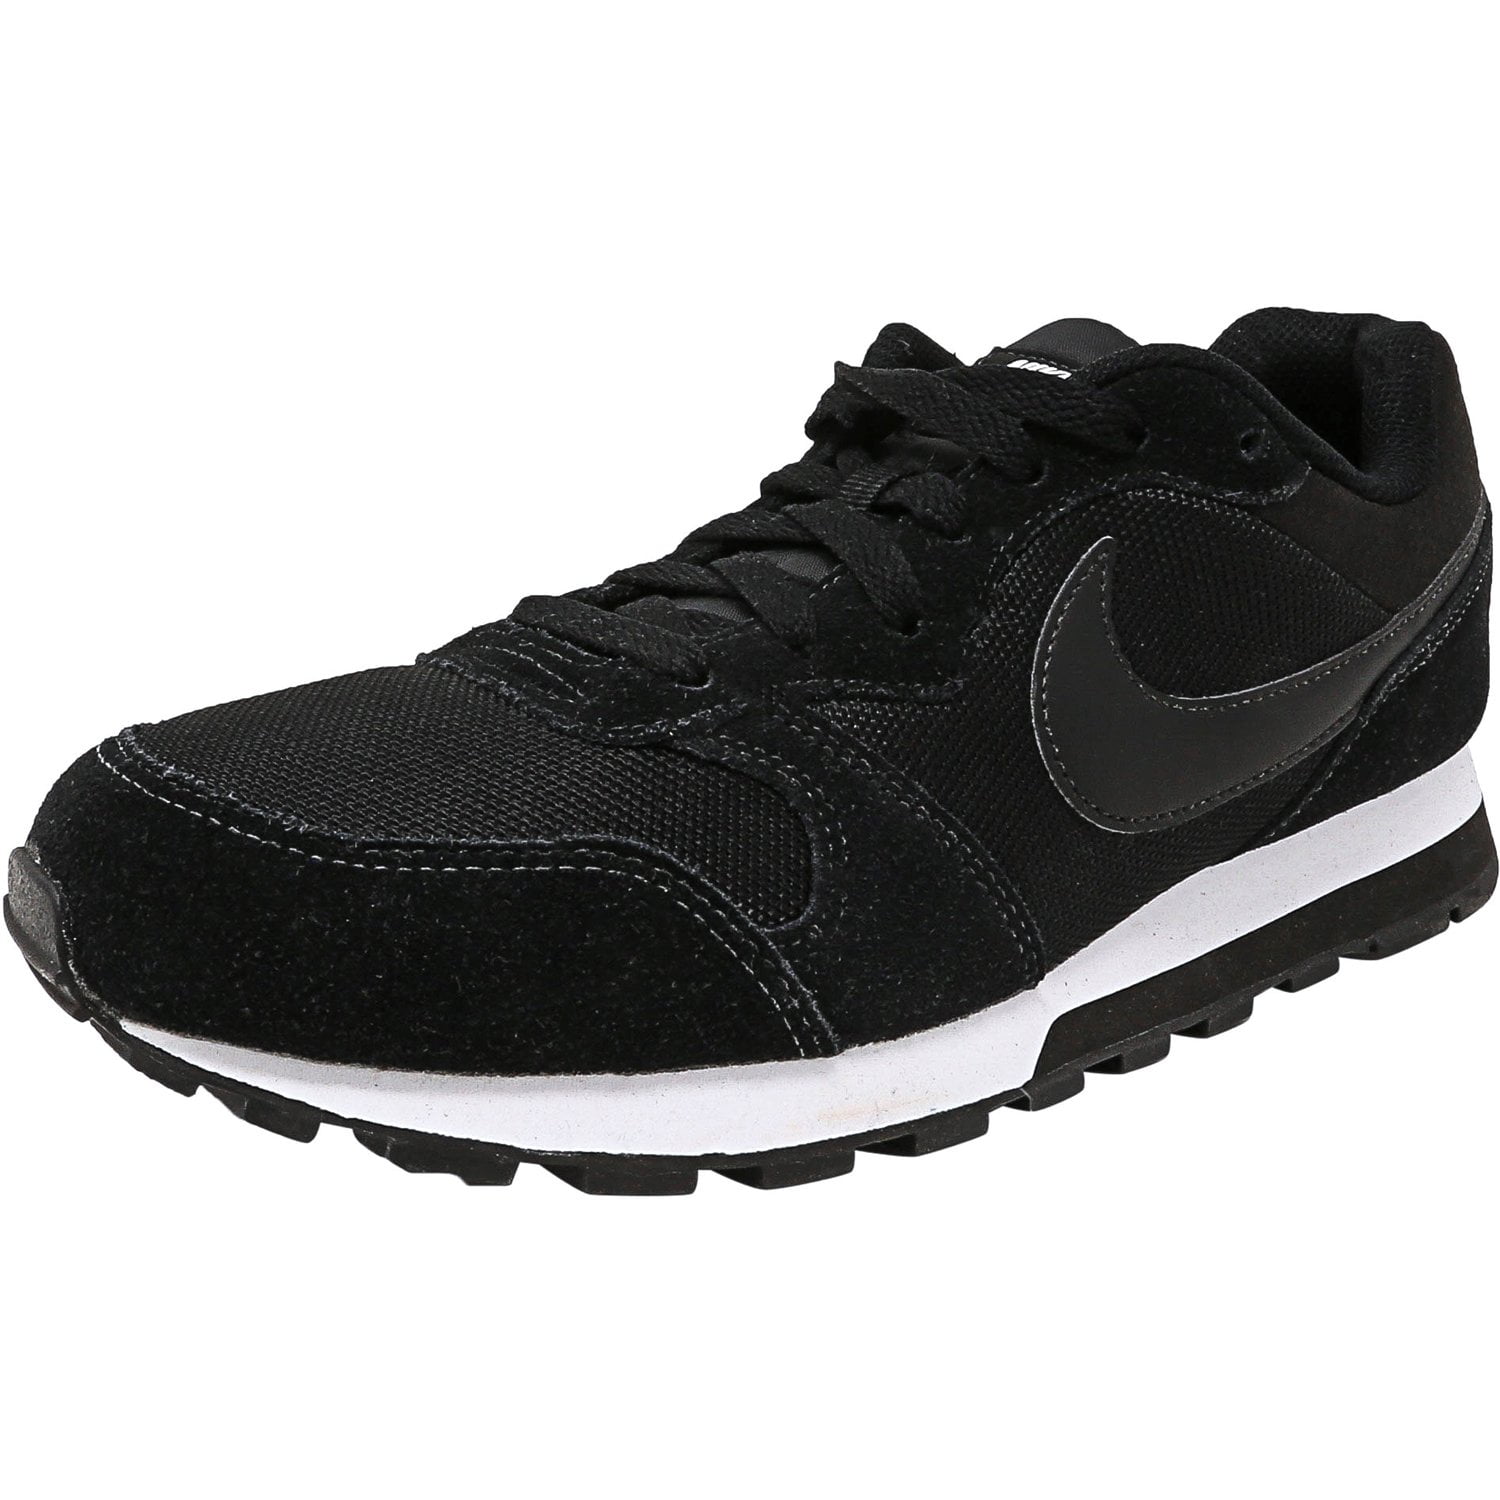 monitor Basura mezcla Nike Women's Md Runner 2 Black / Black-White Ankle-High Running Shoe - 9.5M  - Walmart.com